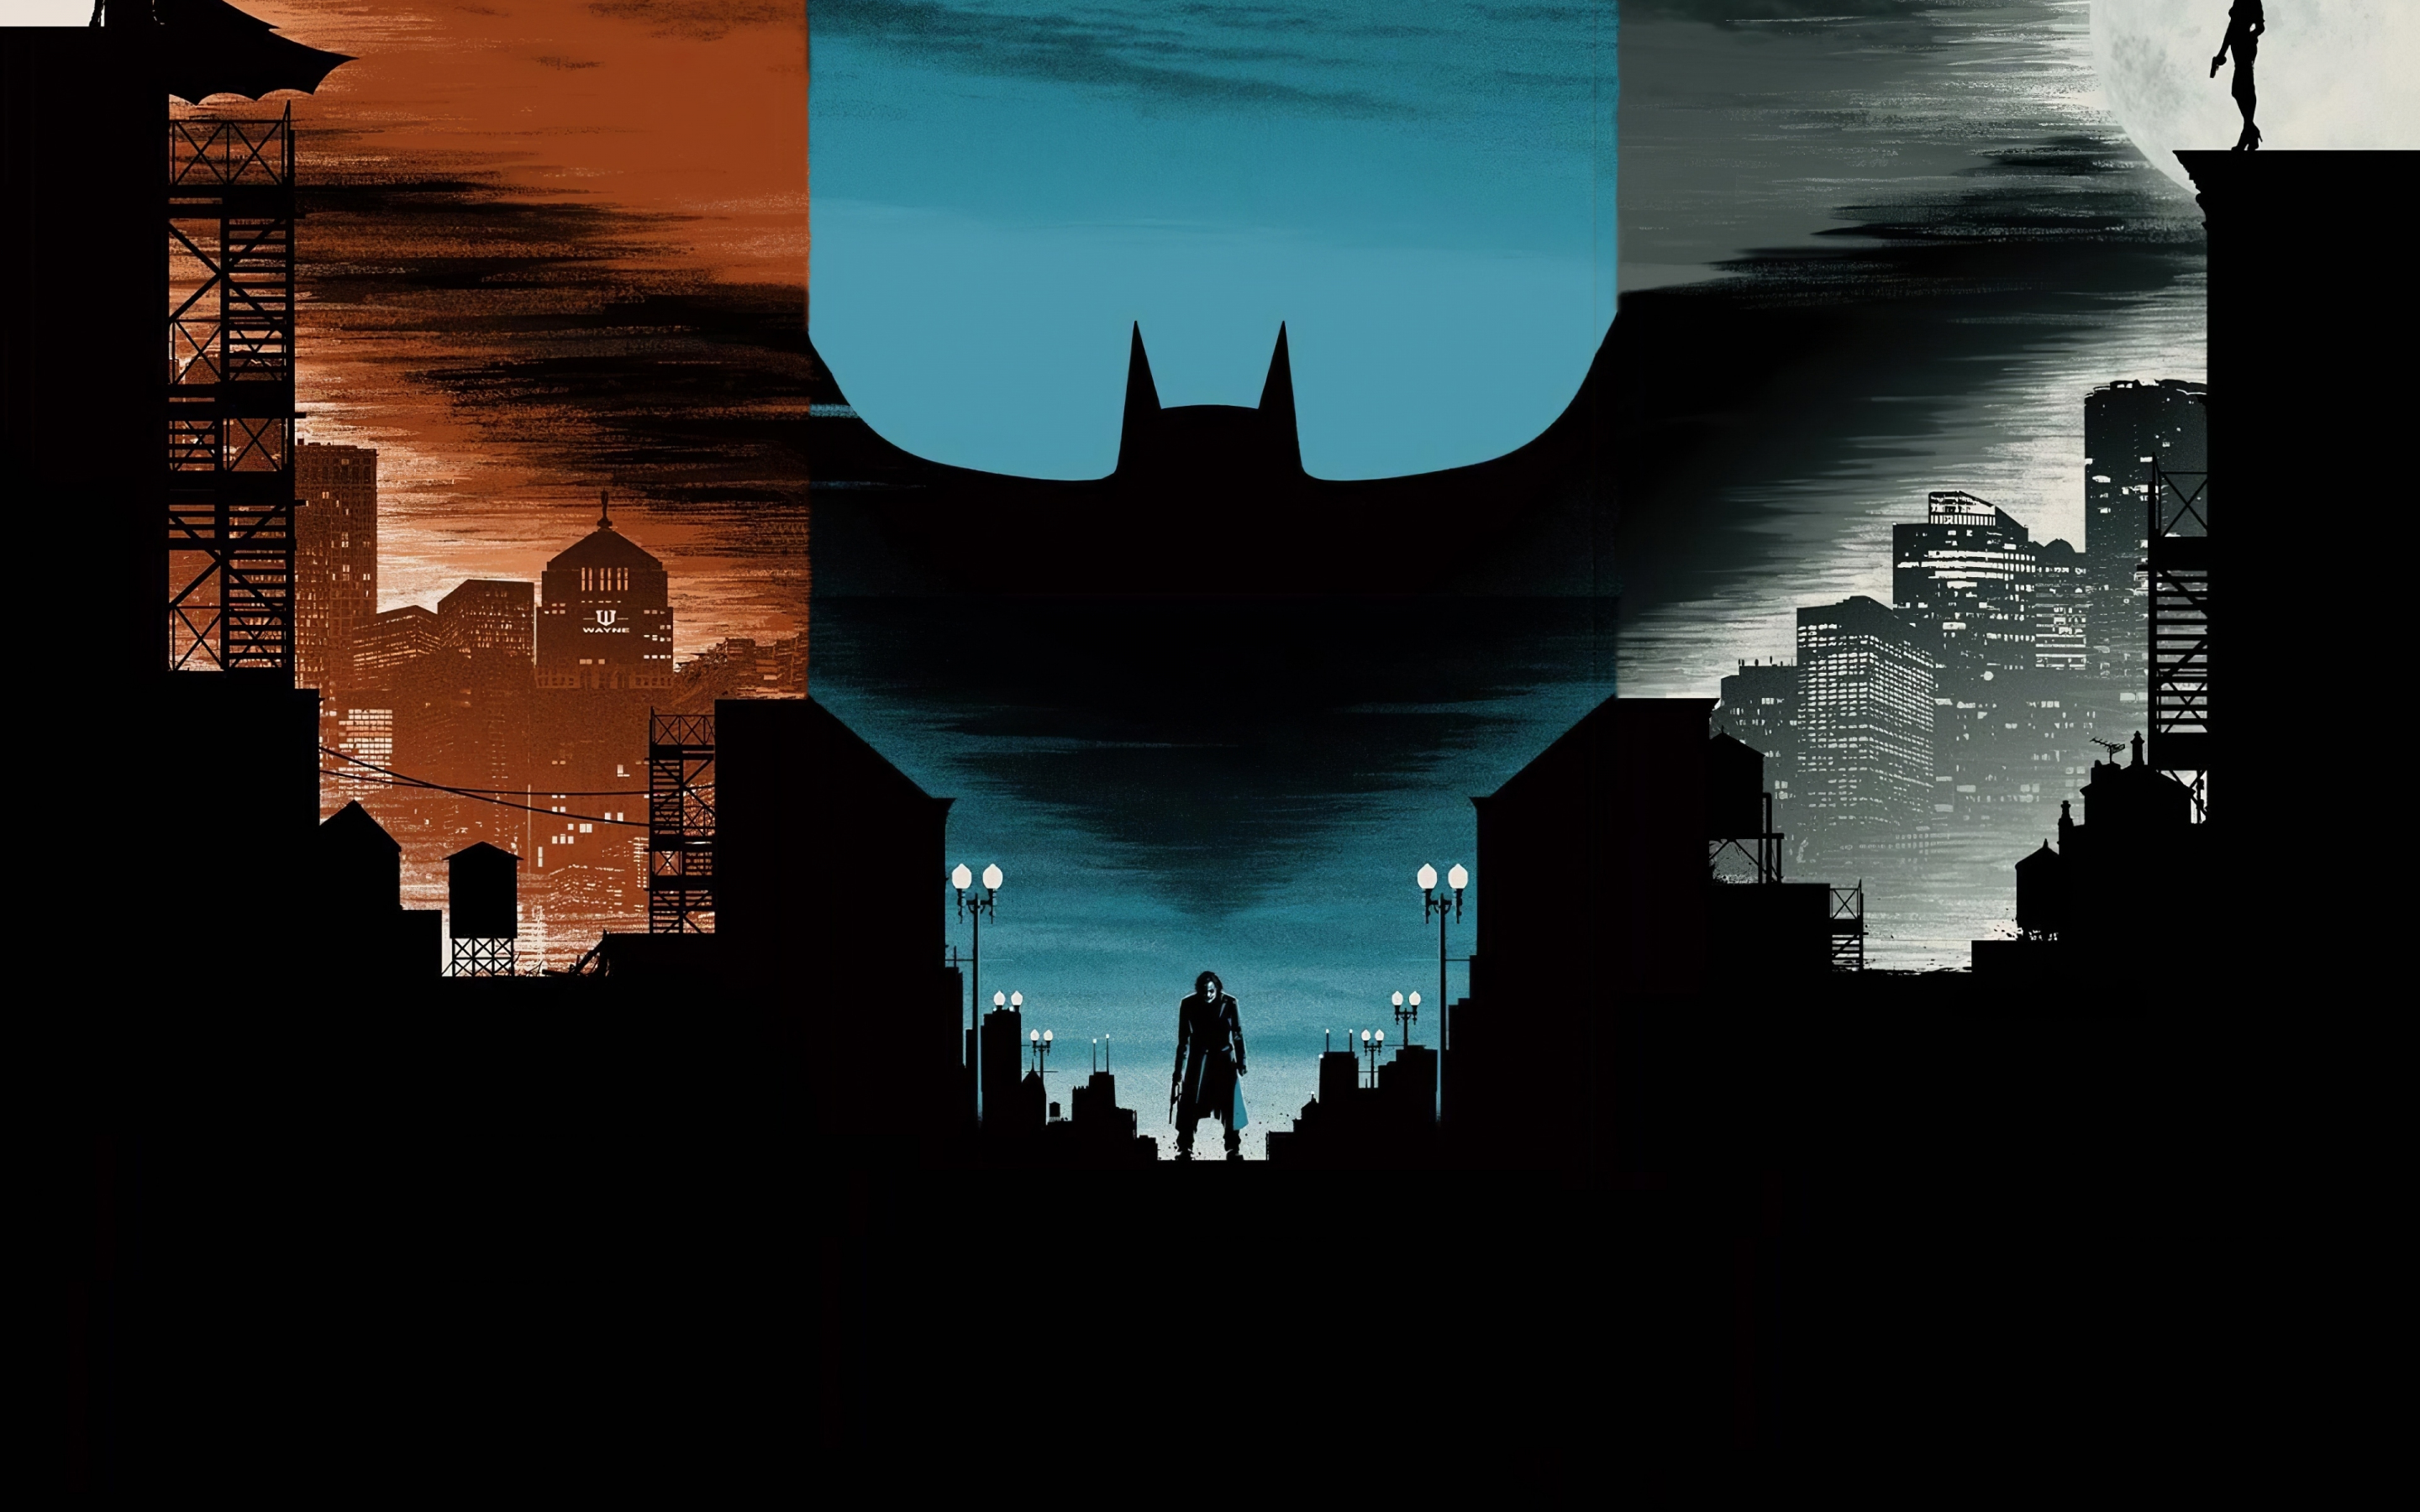 The Dark Knight, Series of movies, minimal, art, 2880x1800 wallpaper